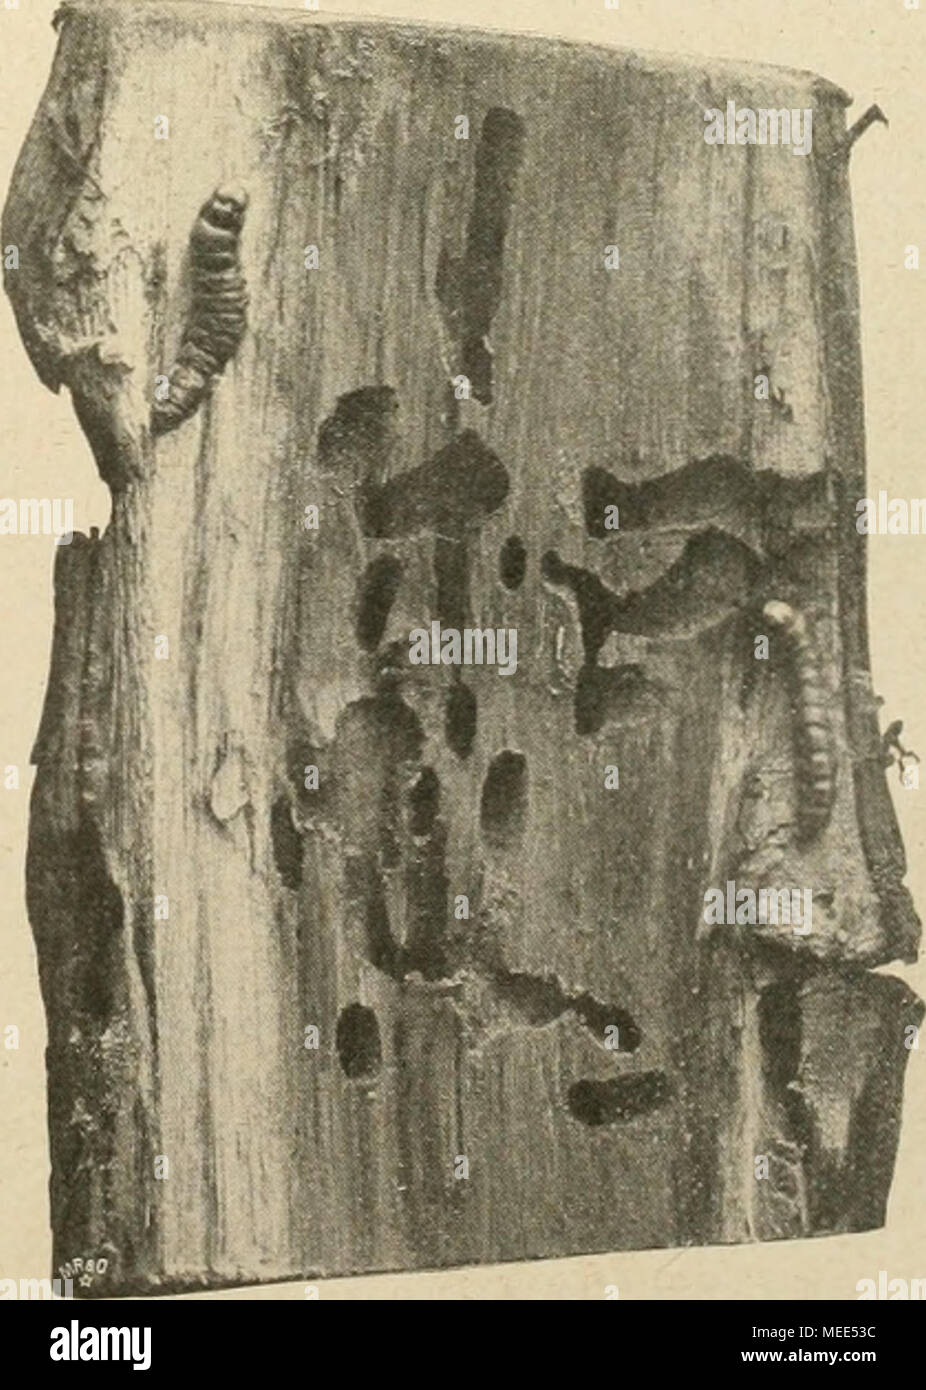 . Die Gartenwelt . Ulmenslamni (Innenseite) durchbohrt von Cossus ligniperda. Zu beiden Seiten je eine ausgewachsene Raupe von Cossus ligniperda. Originalaufnahme für die "Gartcnwelt". Foto Stock